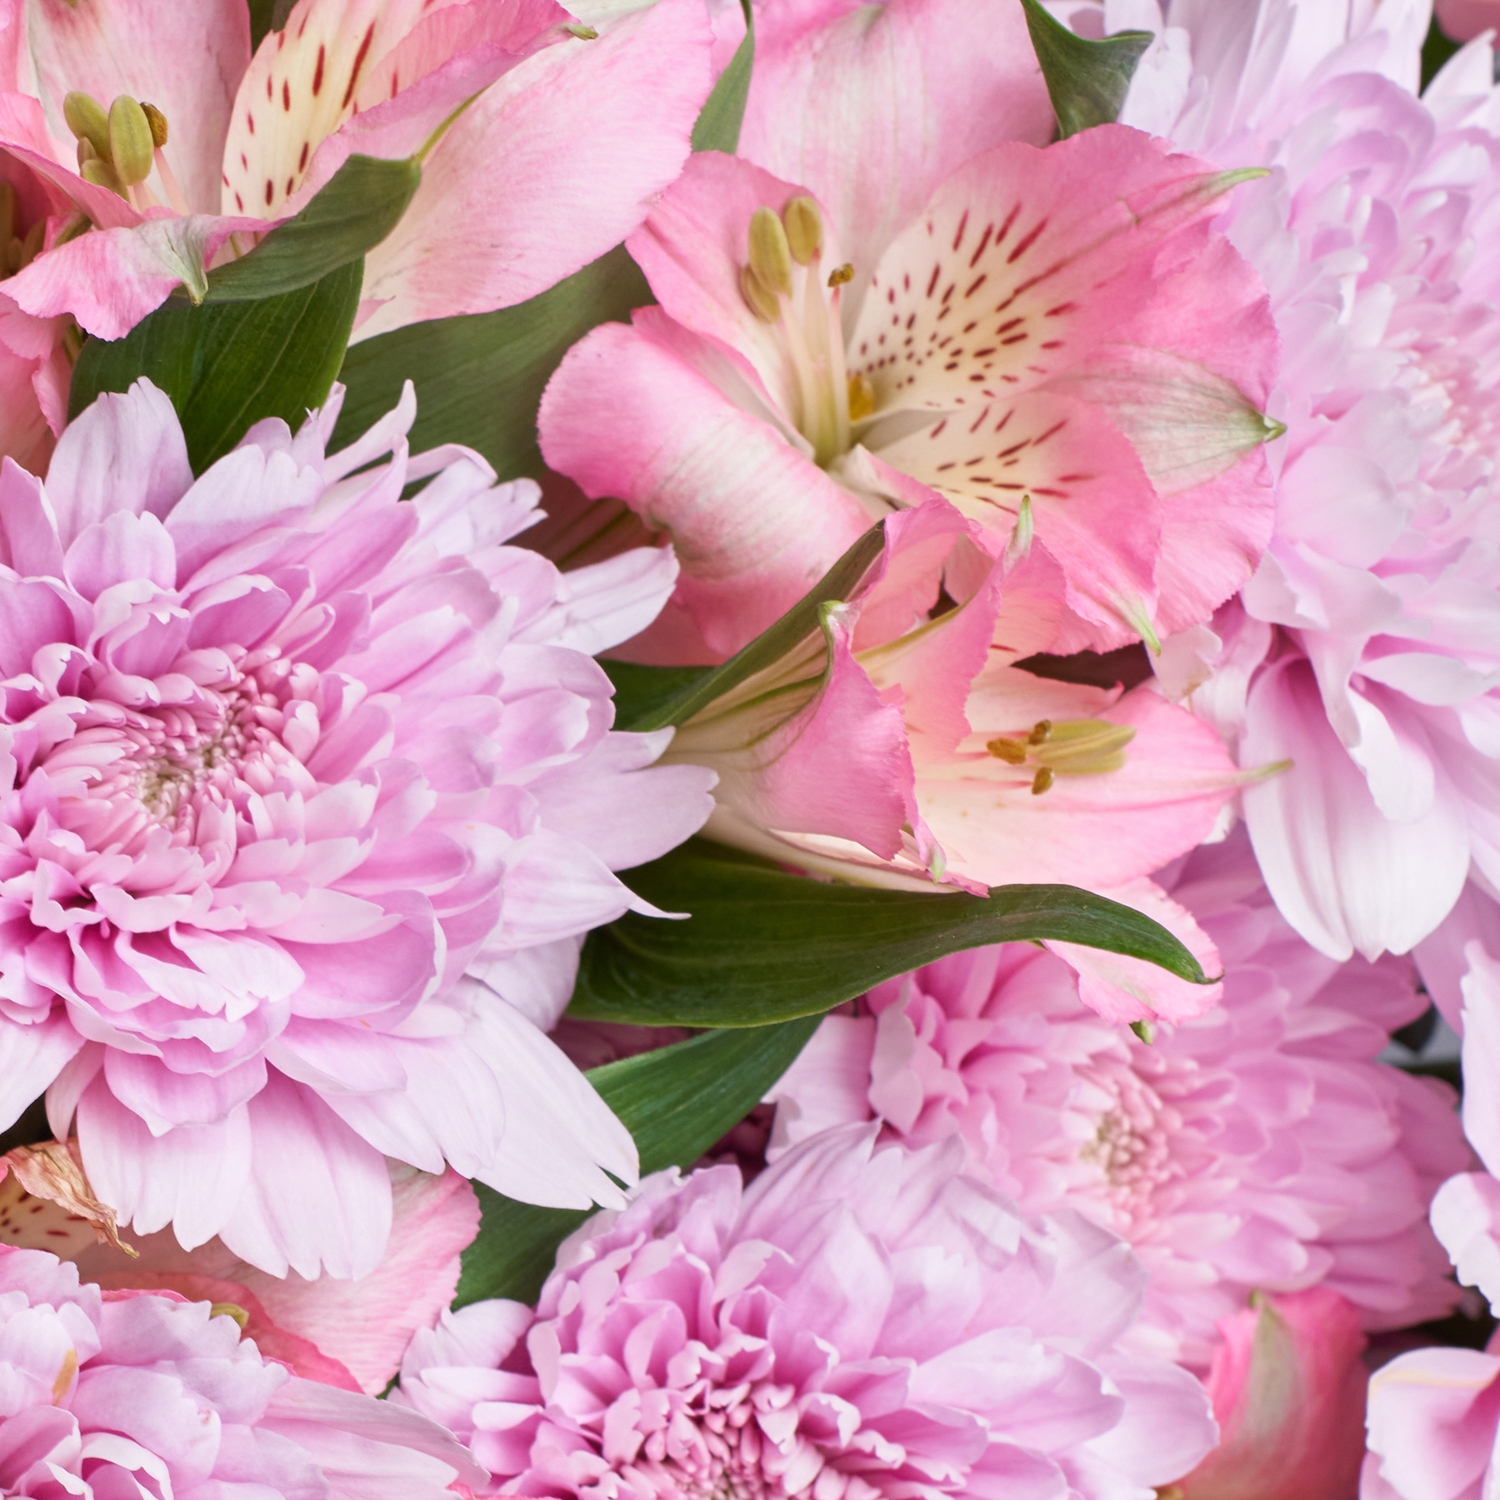 Сборный букет розовых альстромерий и хризантем